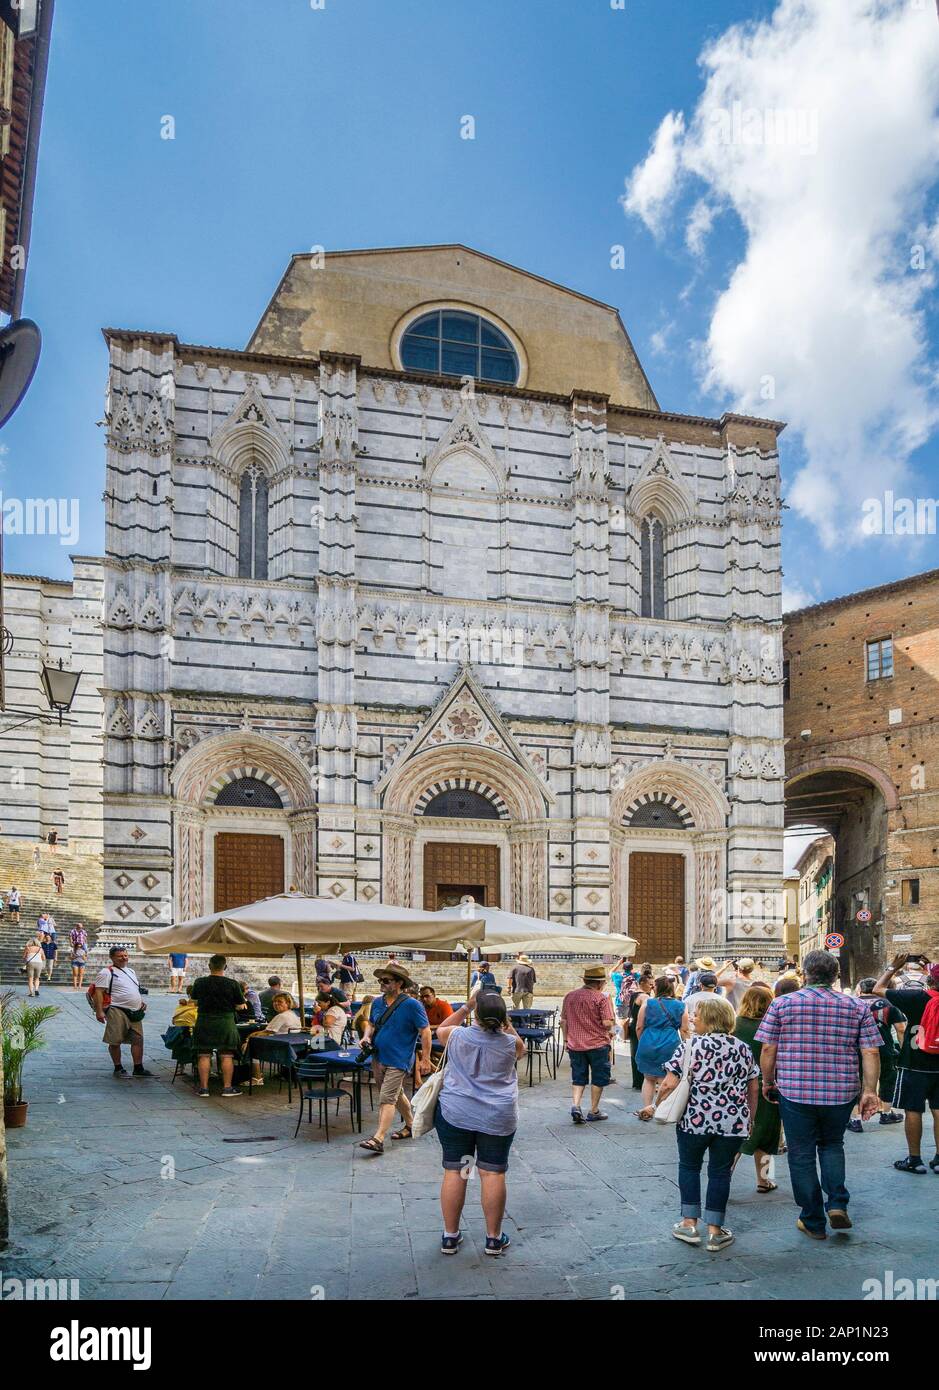 Gothic facade of the Baptistery of San Giovanni, Siena, Tuscany, Italy Stock Photo